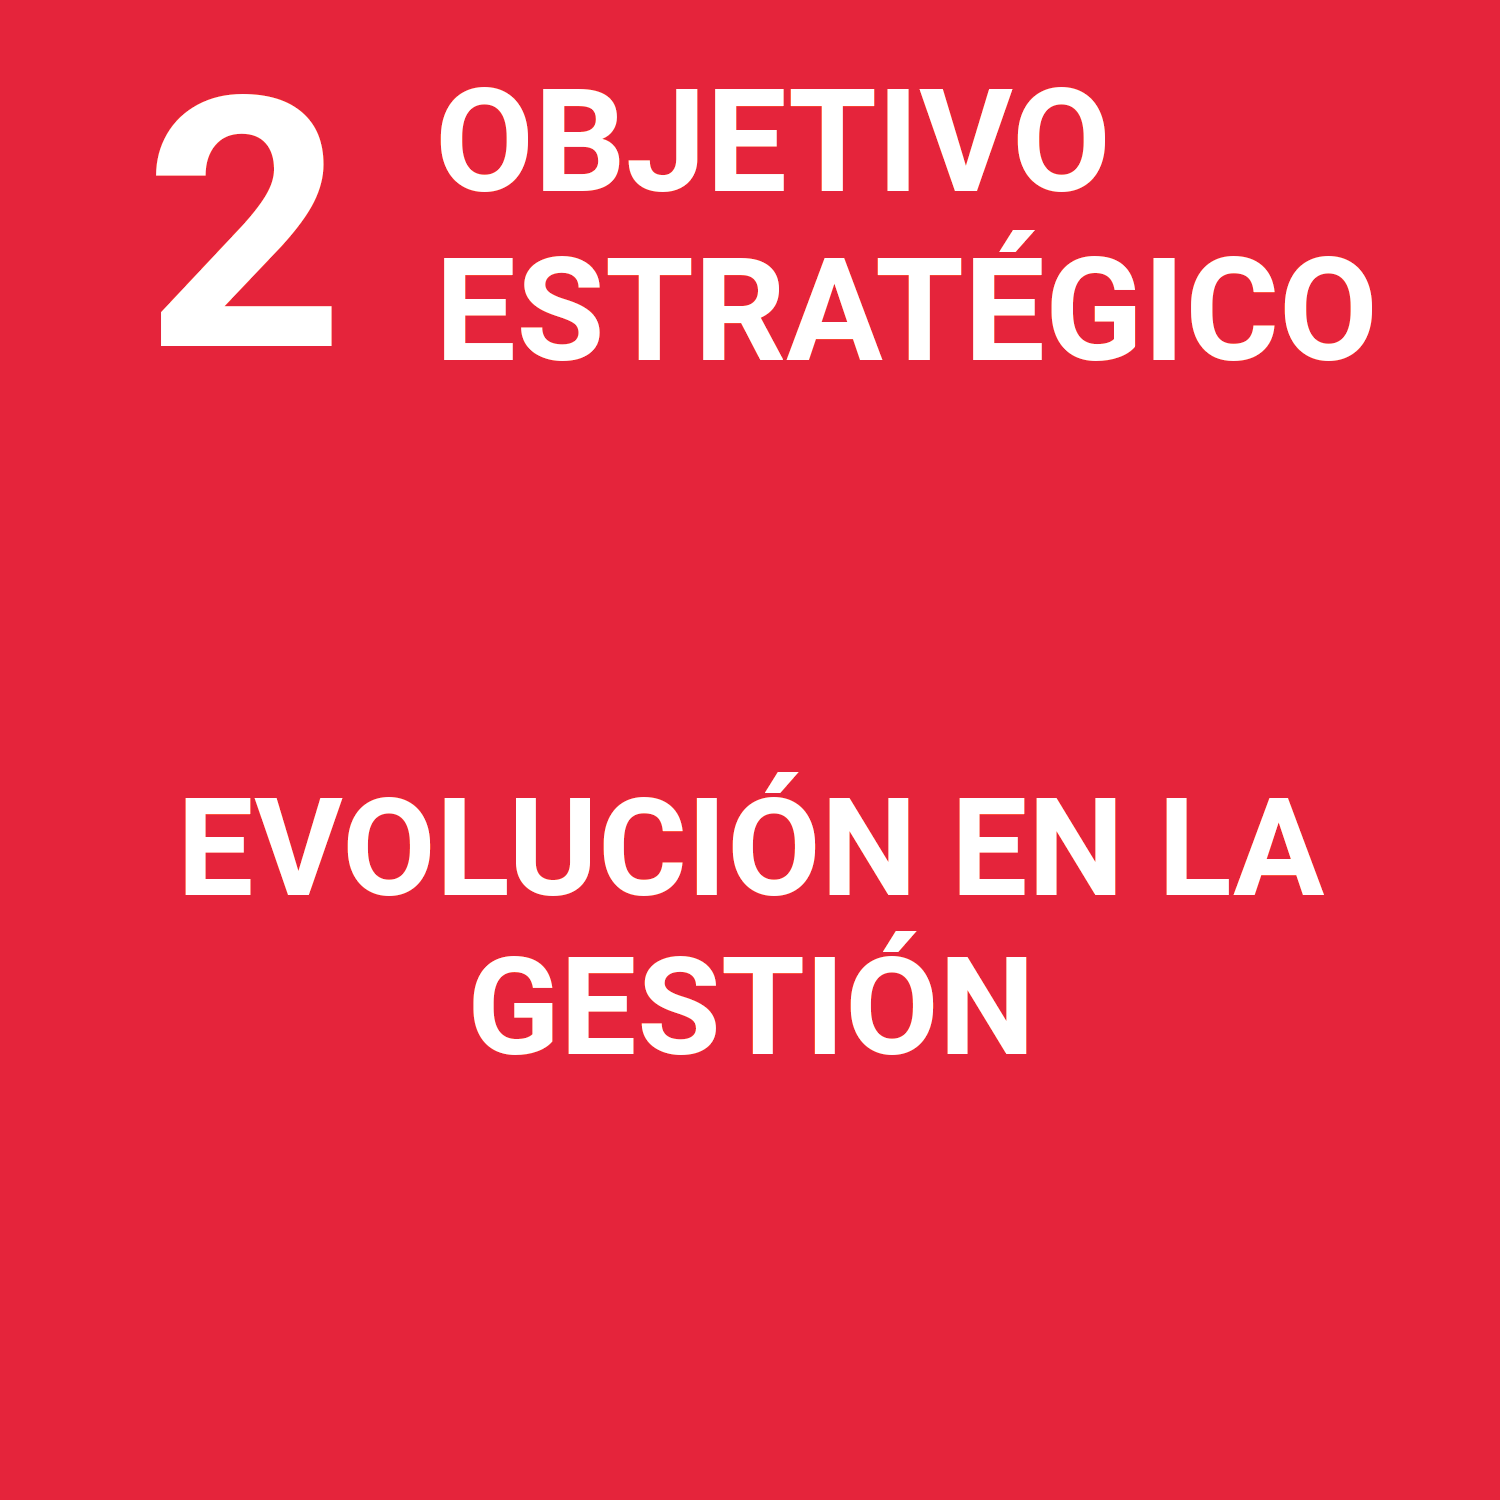 O.E.2 - Evolución en la gestión